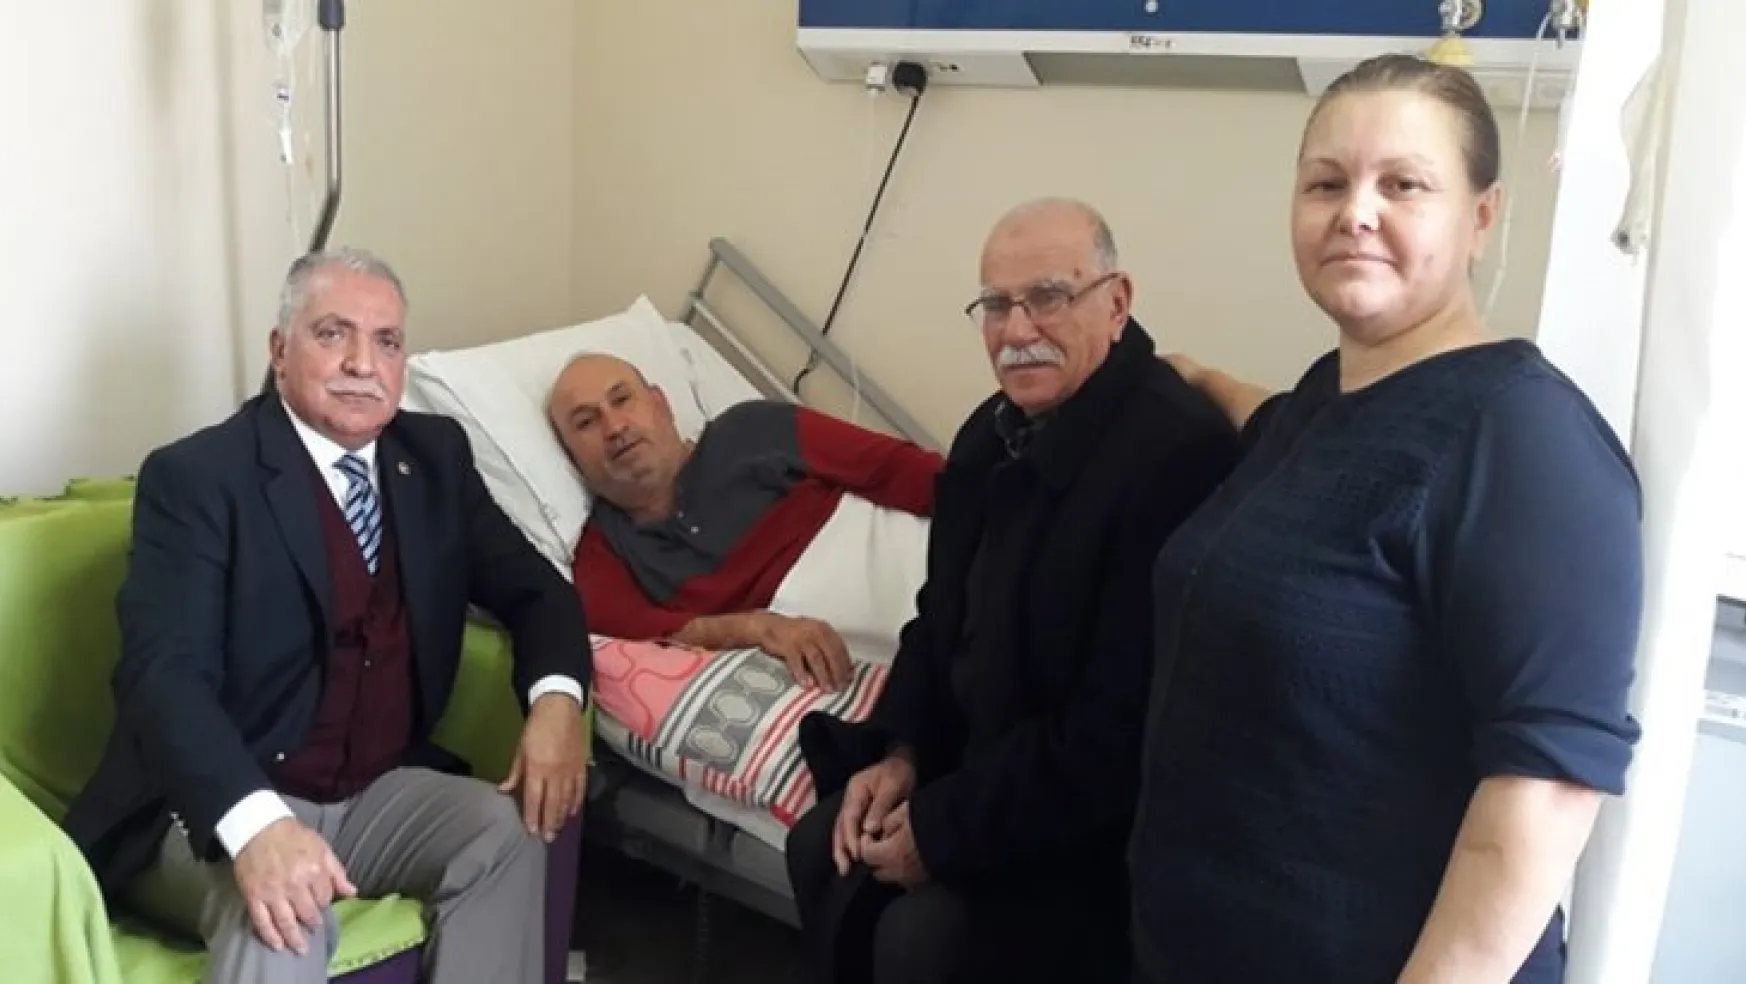 Disipline Sevk Edilen MHP'li Başkan Beyin Kanaması Geçirdi